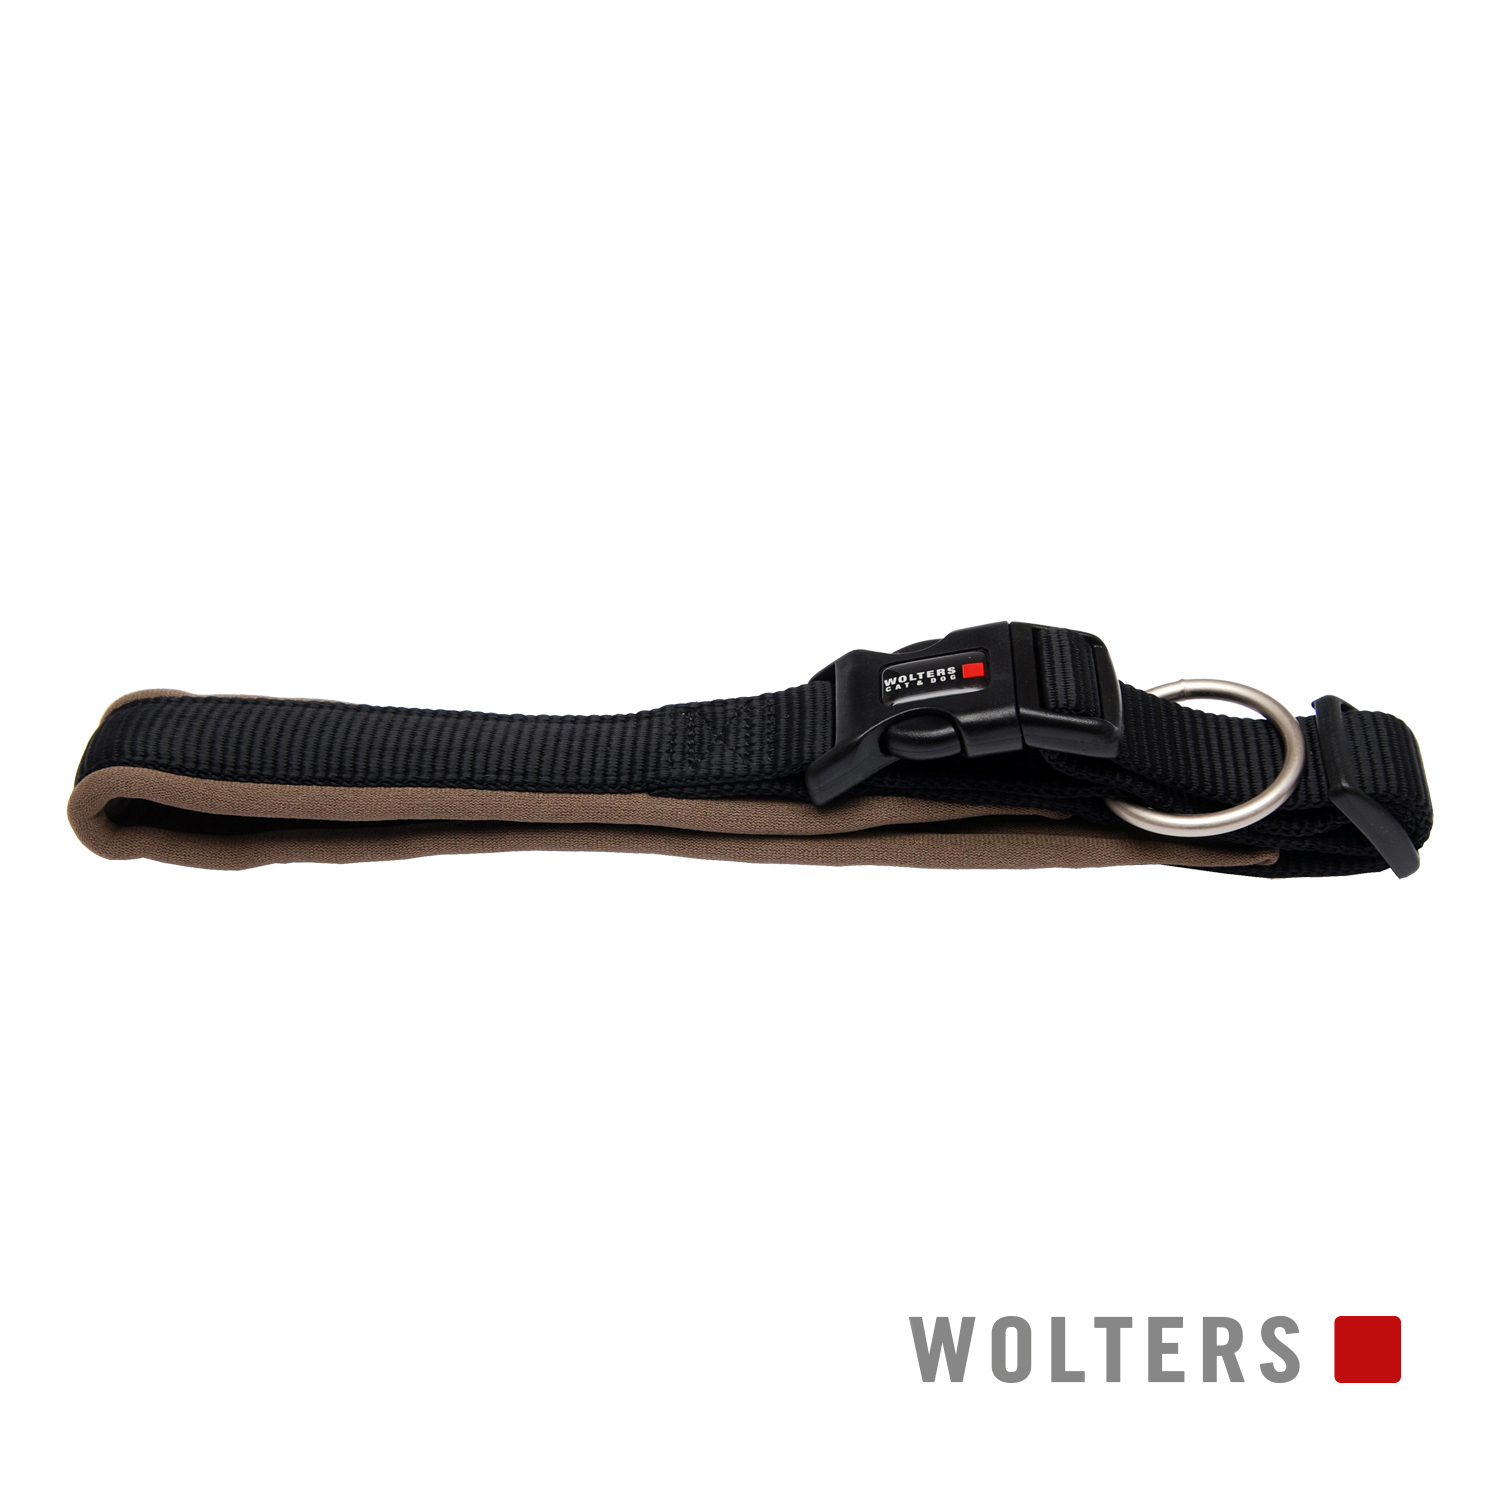 Wolters Halsband Professional Comfort Schwarz/Braun 50-55cm x 35mm